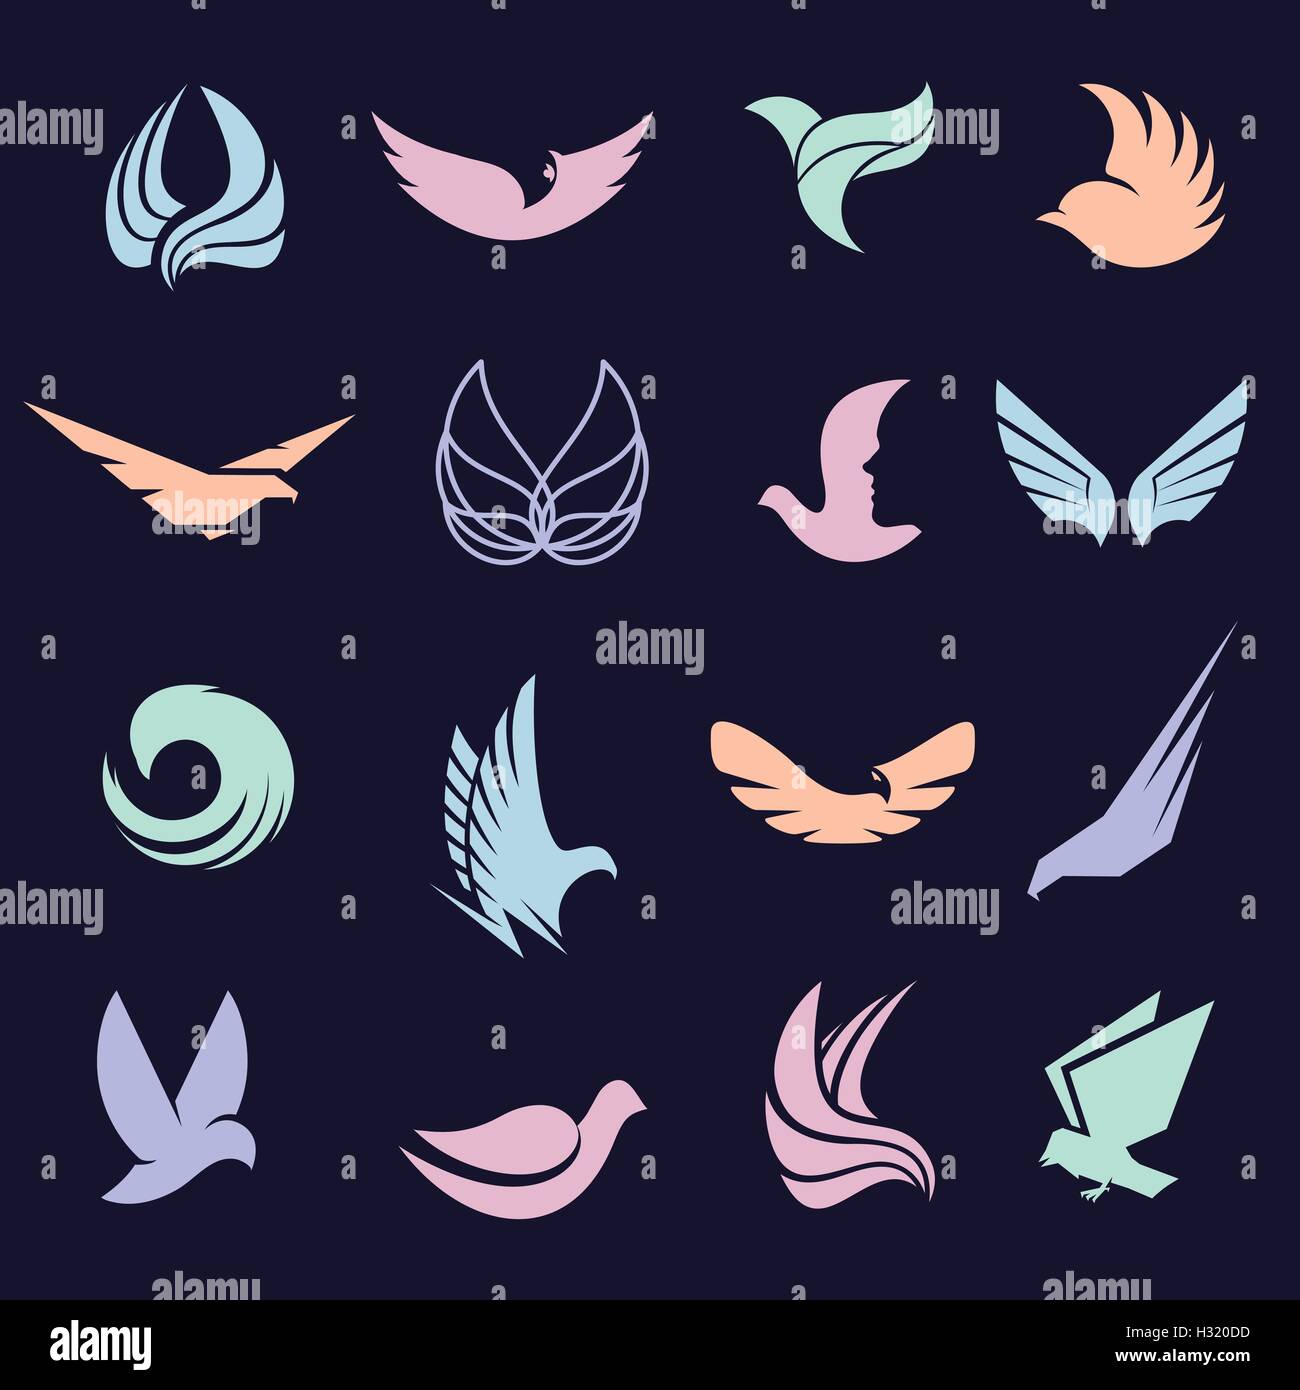 Abstract isolato uccelli colorati e ali delle farfalle con piume set del logo su sfondo nero. Logotipo di volo di raccolta. Icone dell'aria. Illustrazione Vettoriale. Eagle,pigeon,hawk silhouette . Illustrazione Vettoriale